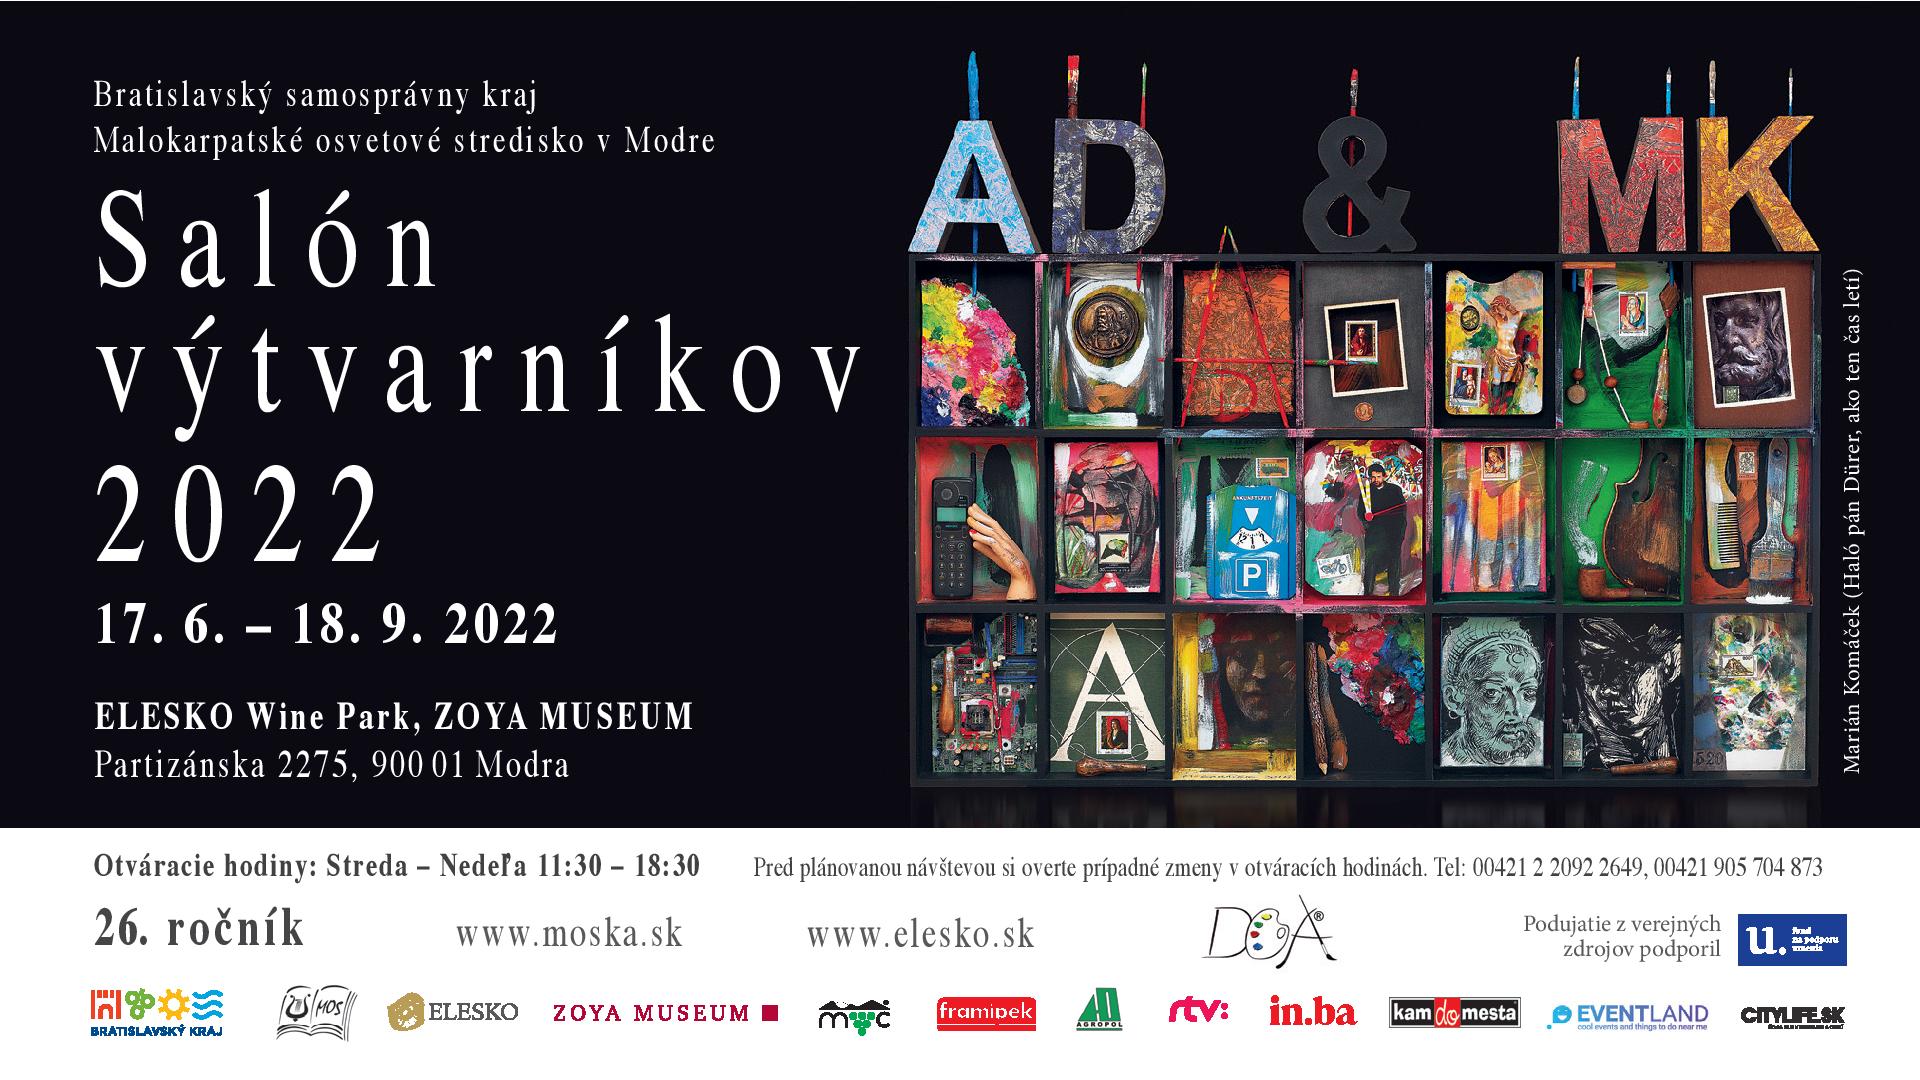 Saln vtvarnkov 2022 - kolektvna vstava 77 umelcov Bratislavskho kraja